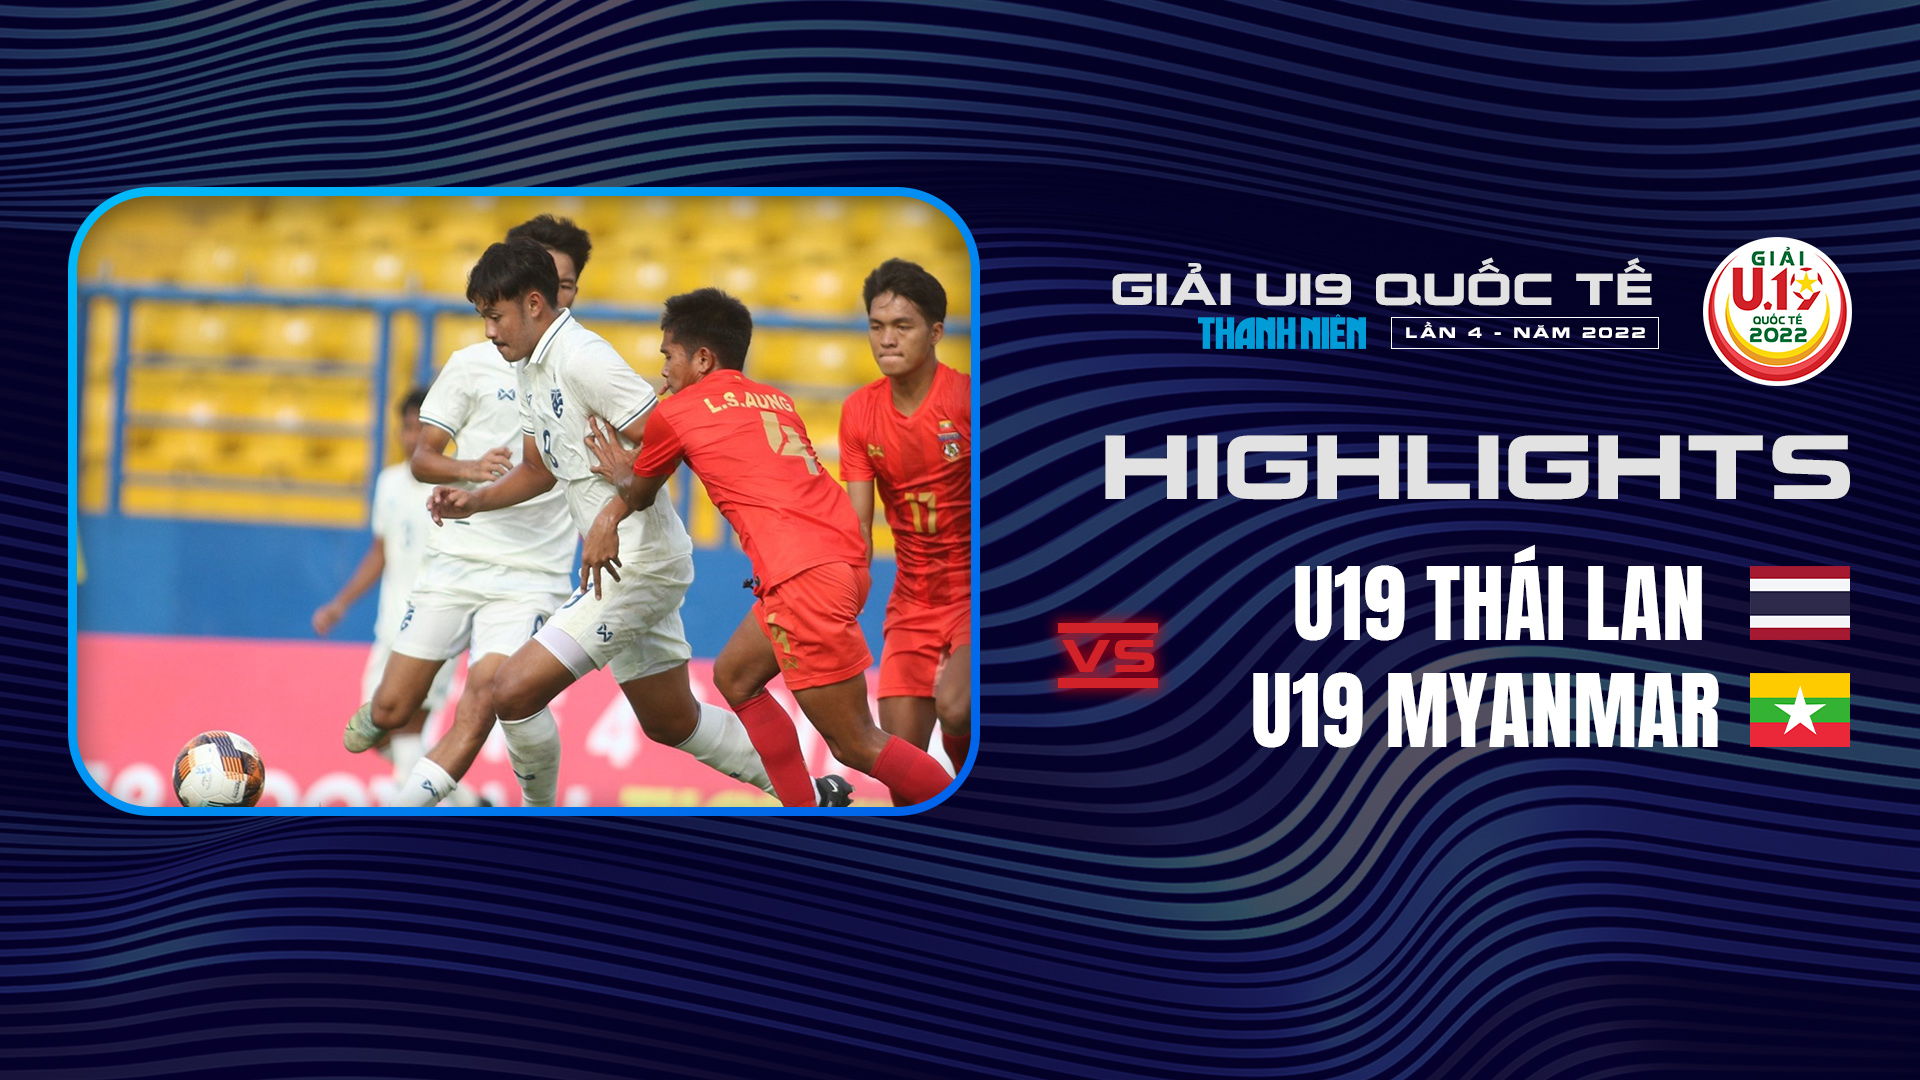 U19 Thái Lan - U19 Myanmar Highlights - Highlights U19 Quốc Tế 2022